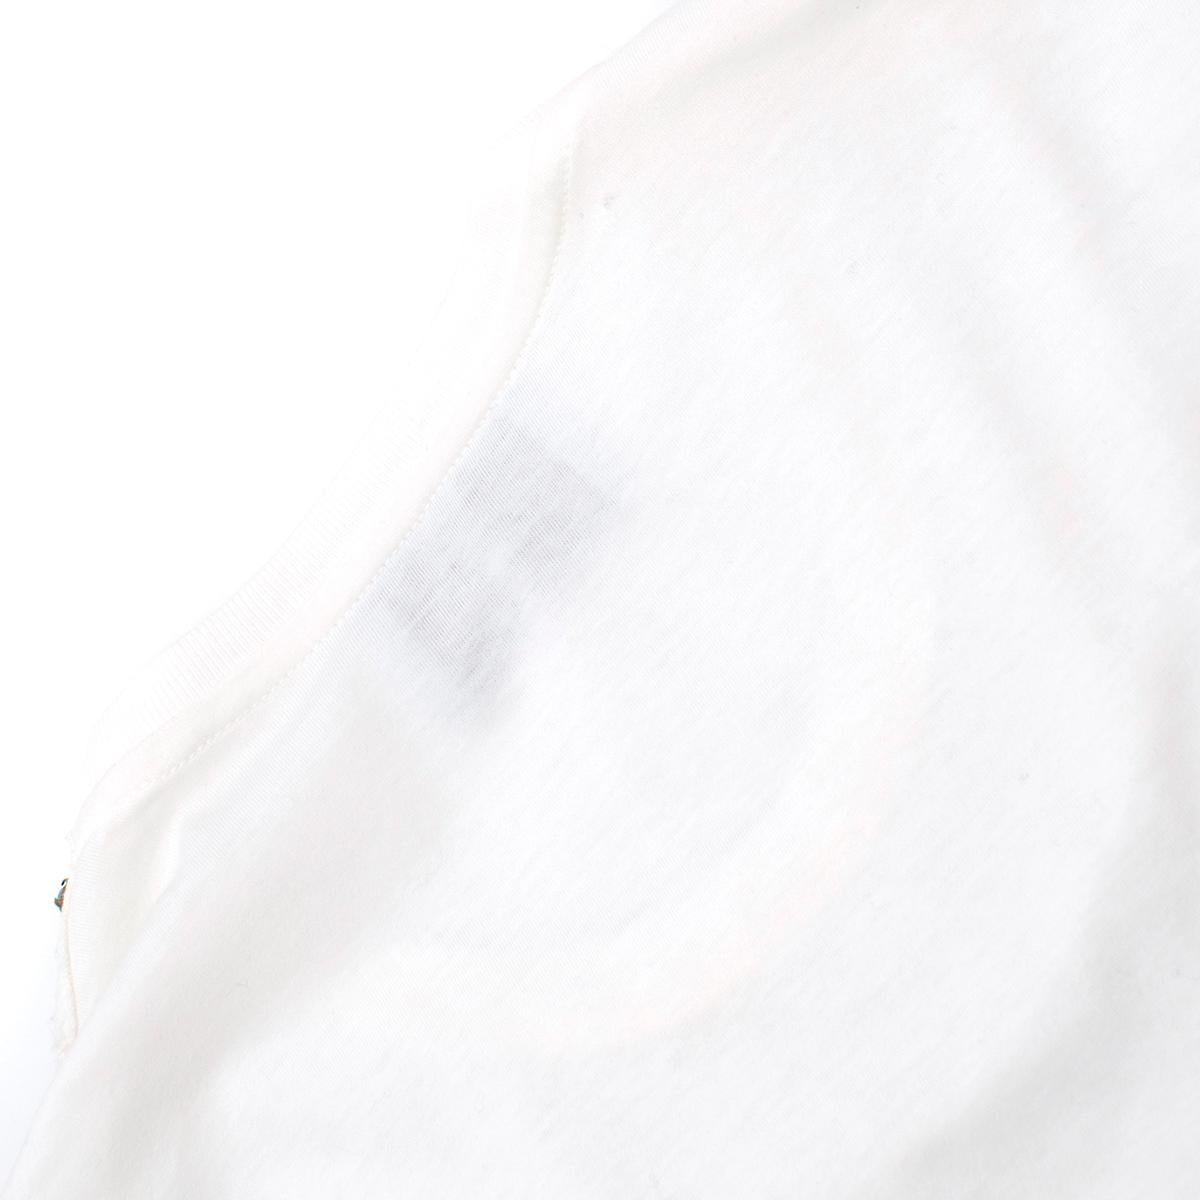 Prada White Cotton Embellished T-shirt estimated SIZE XS-S 1